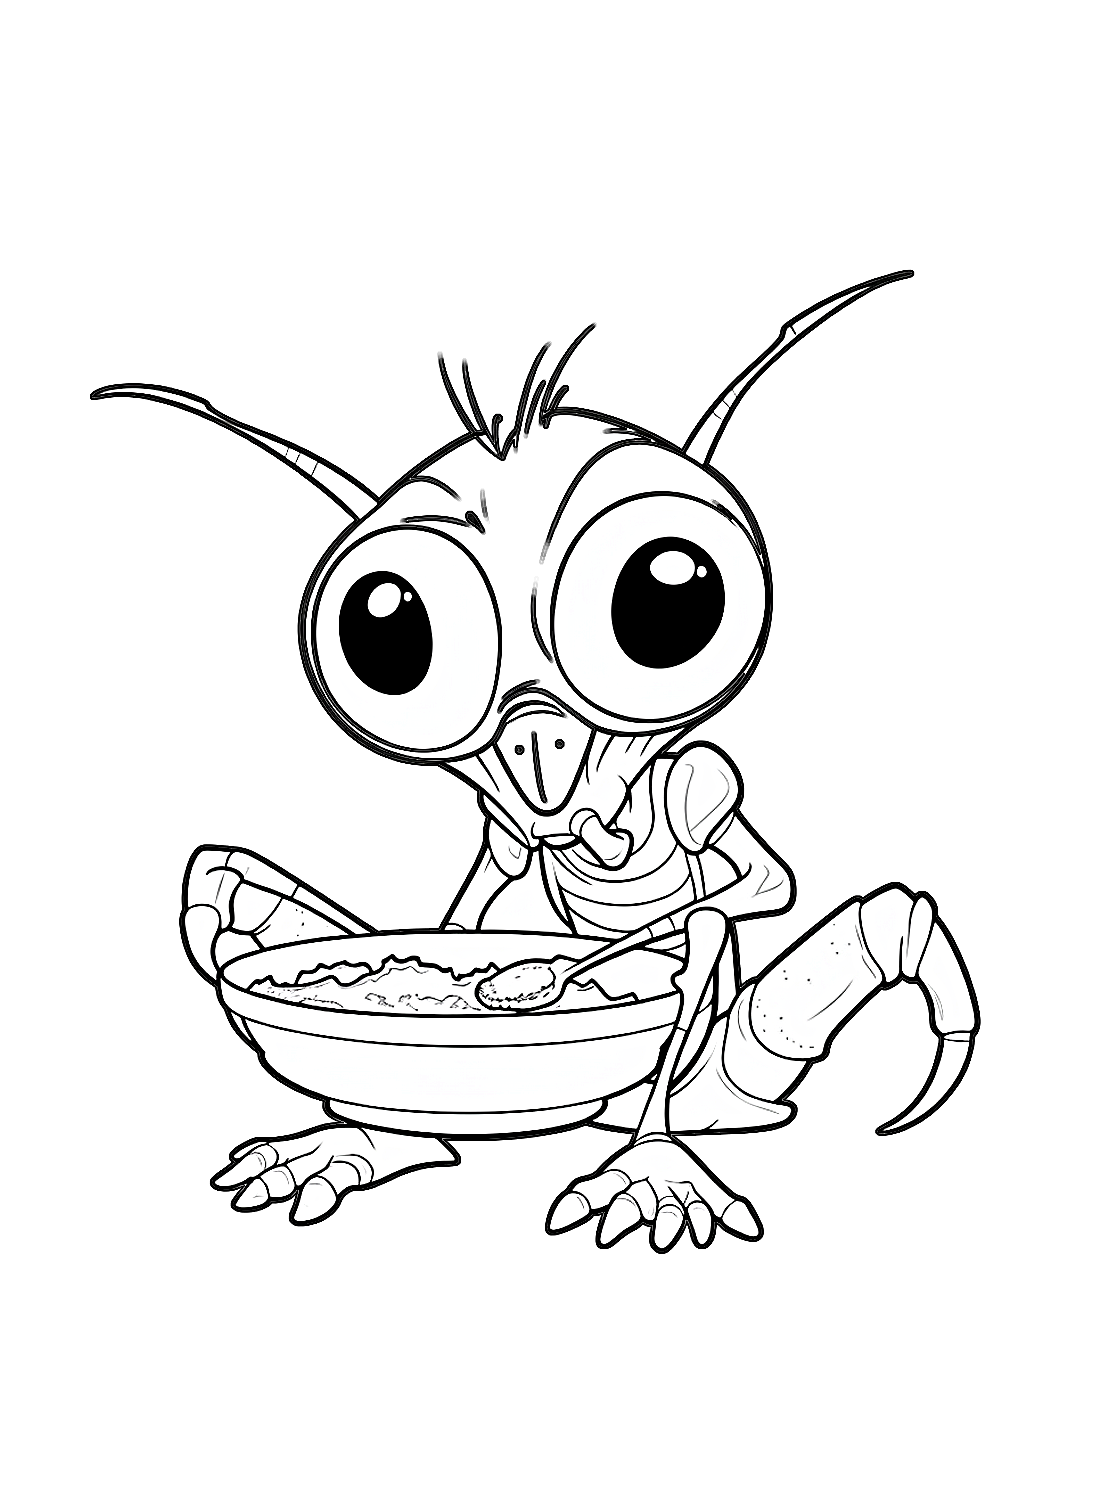 Таракан ест суп из таракана